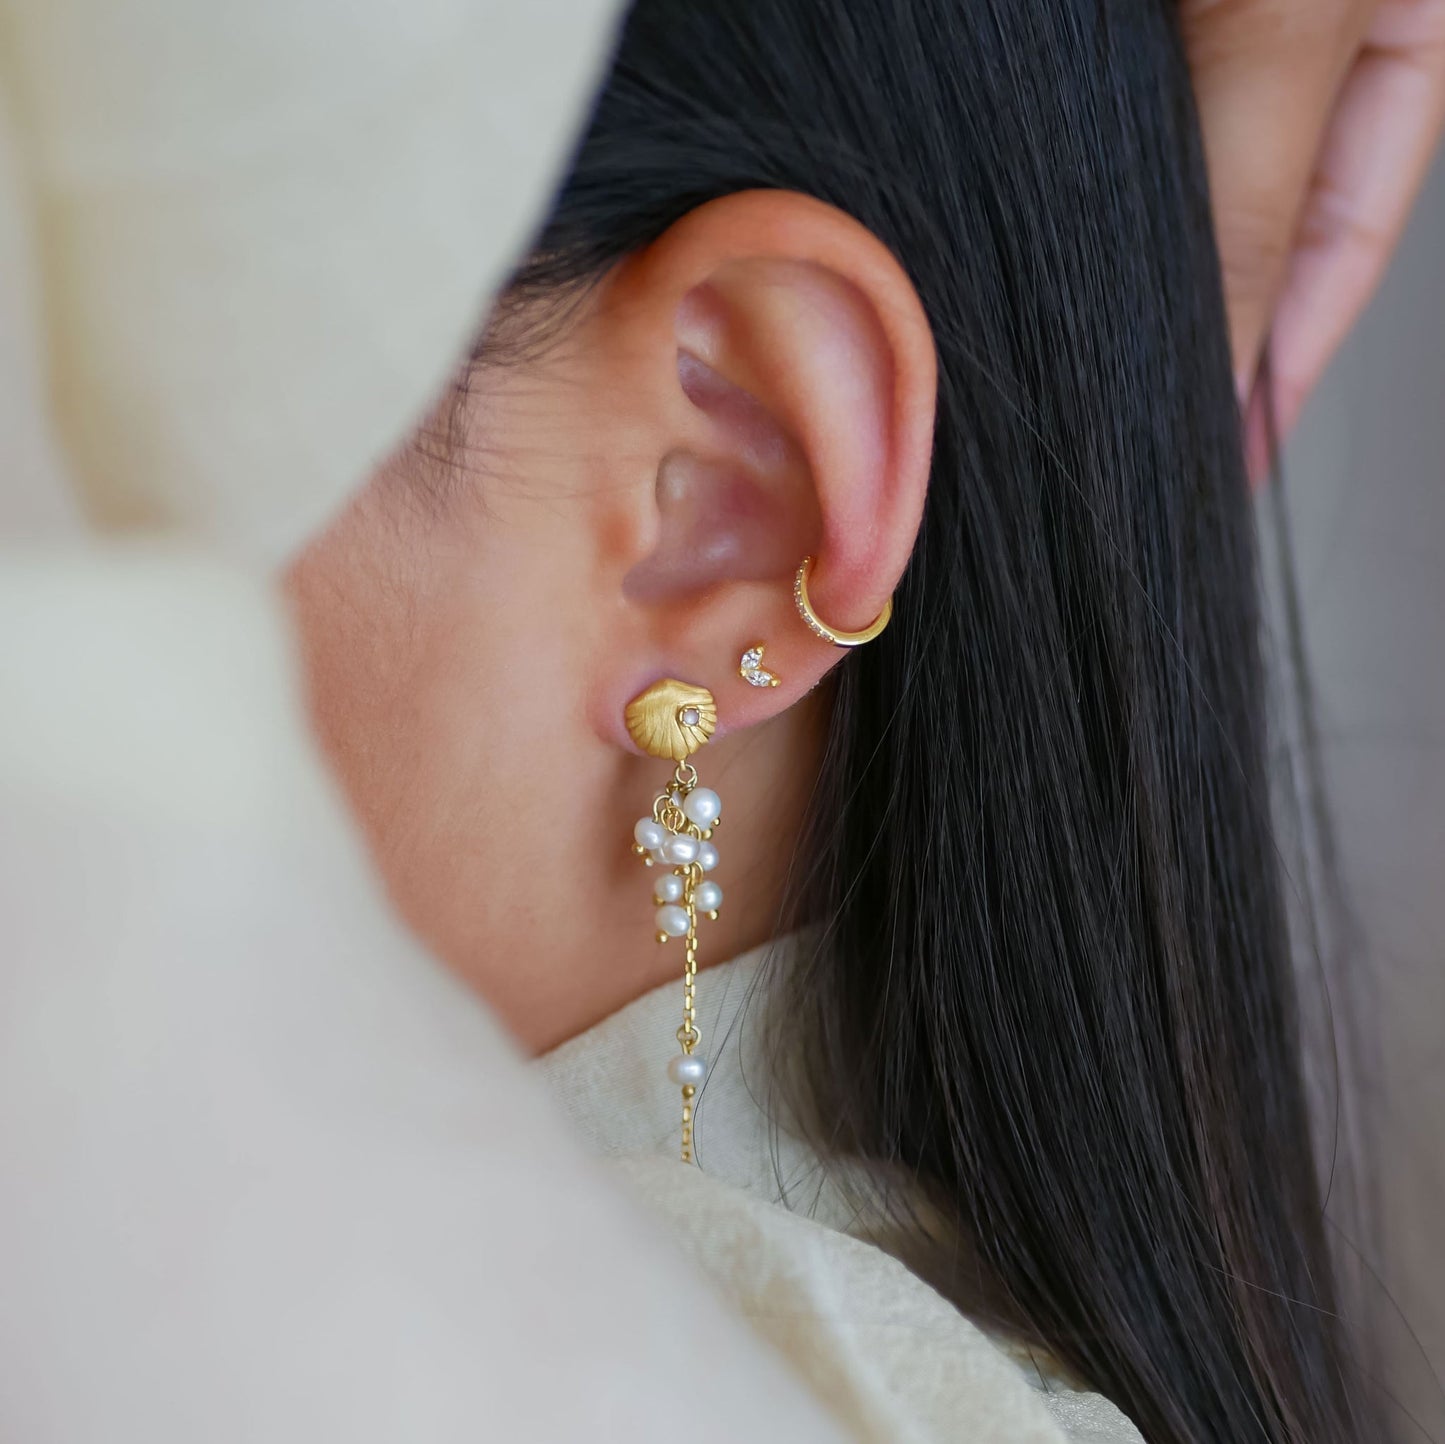 Nuna earring